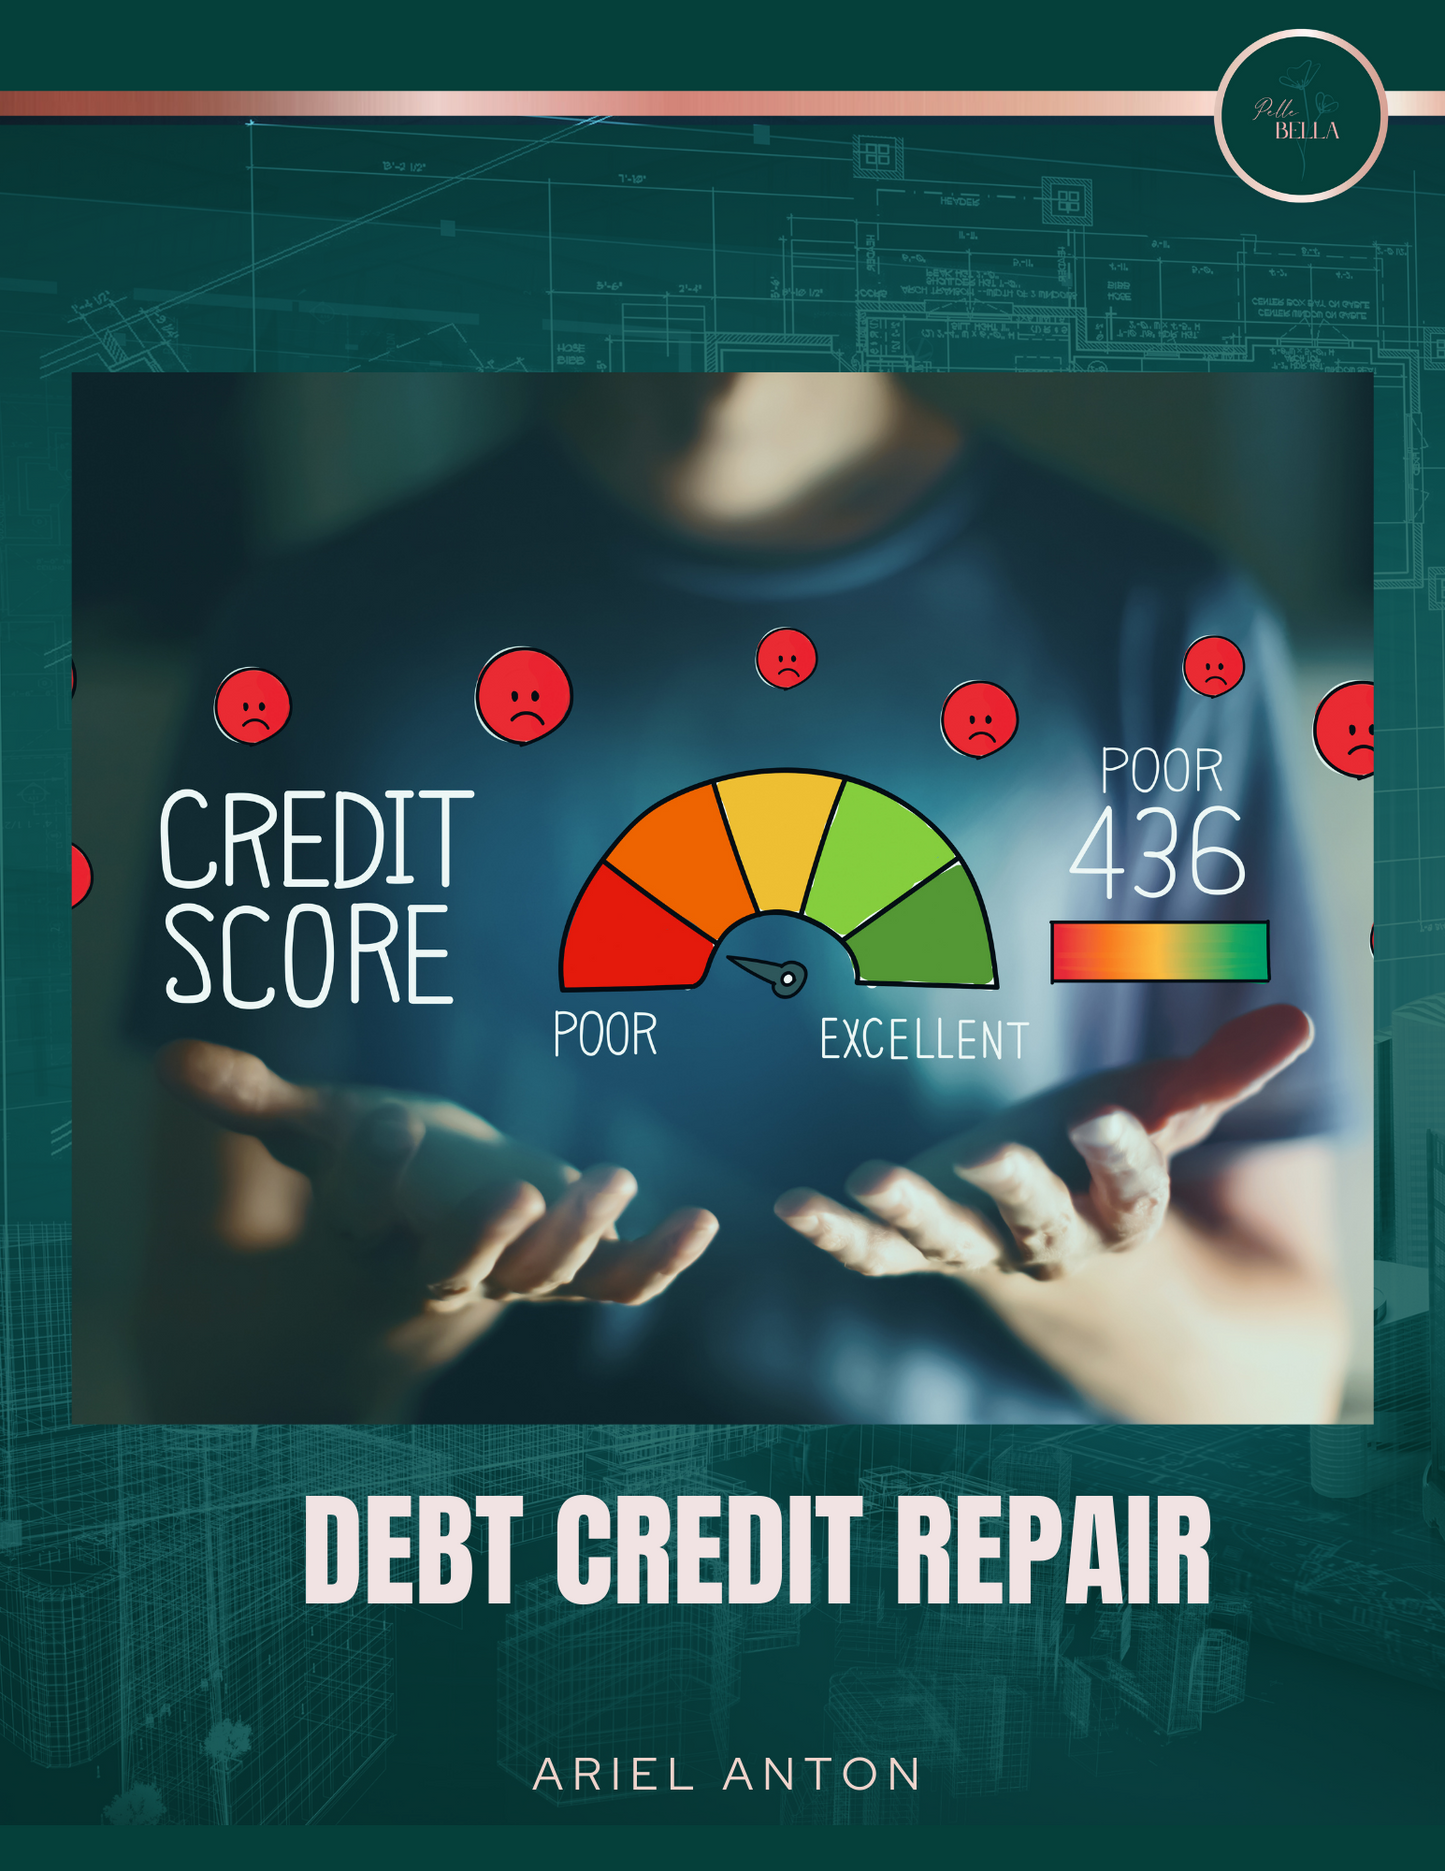 Personal Credit Repair Course